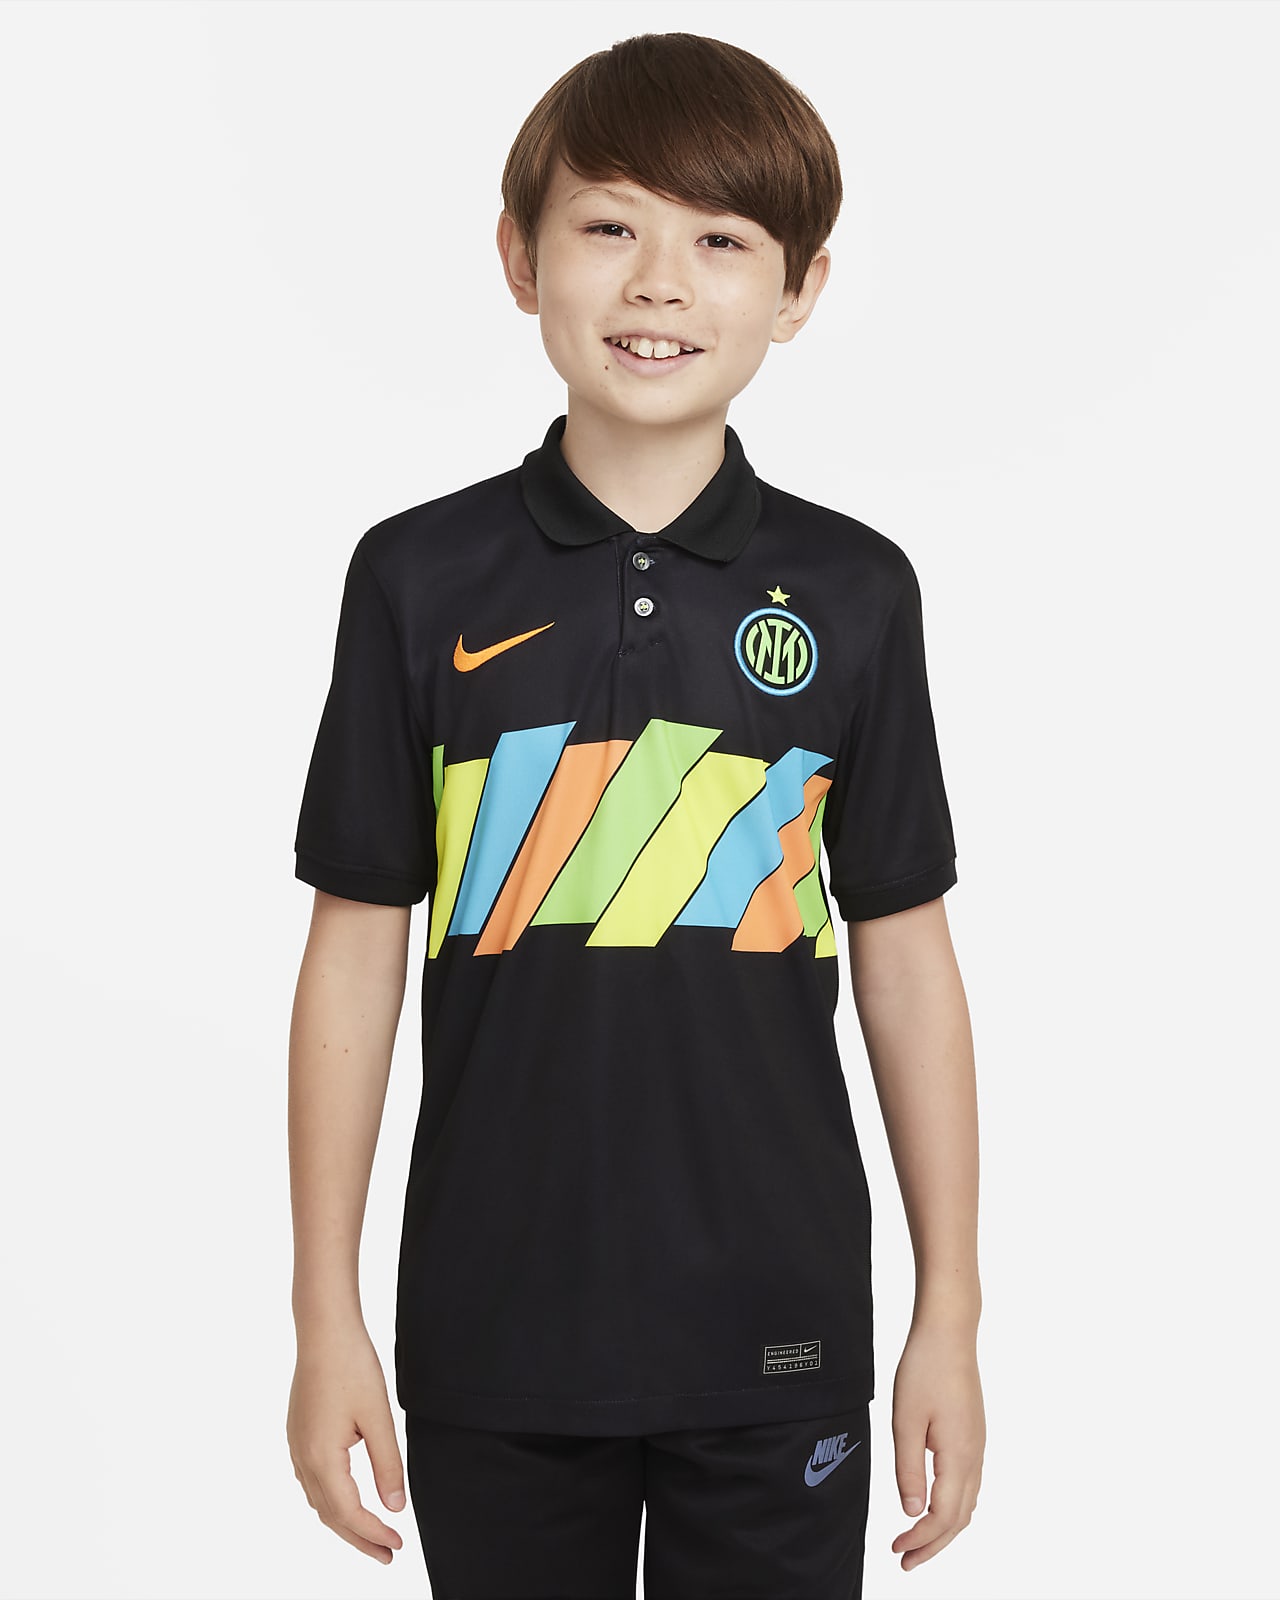 Ποδοσφαιρική φανέλα Nike Dri-FIT εναλλακτικής εμφάνισης Ίντερ 2021/22 Stadium για μεγάλα παιδιά